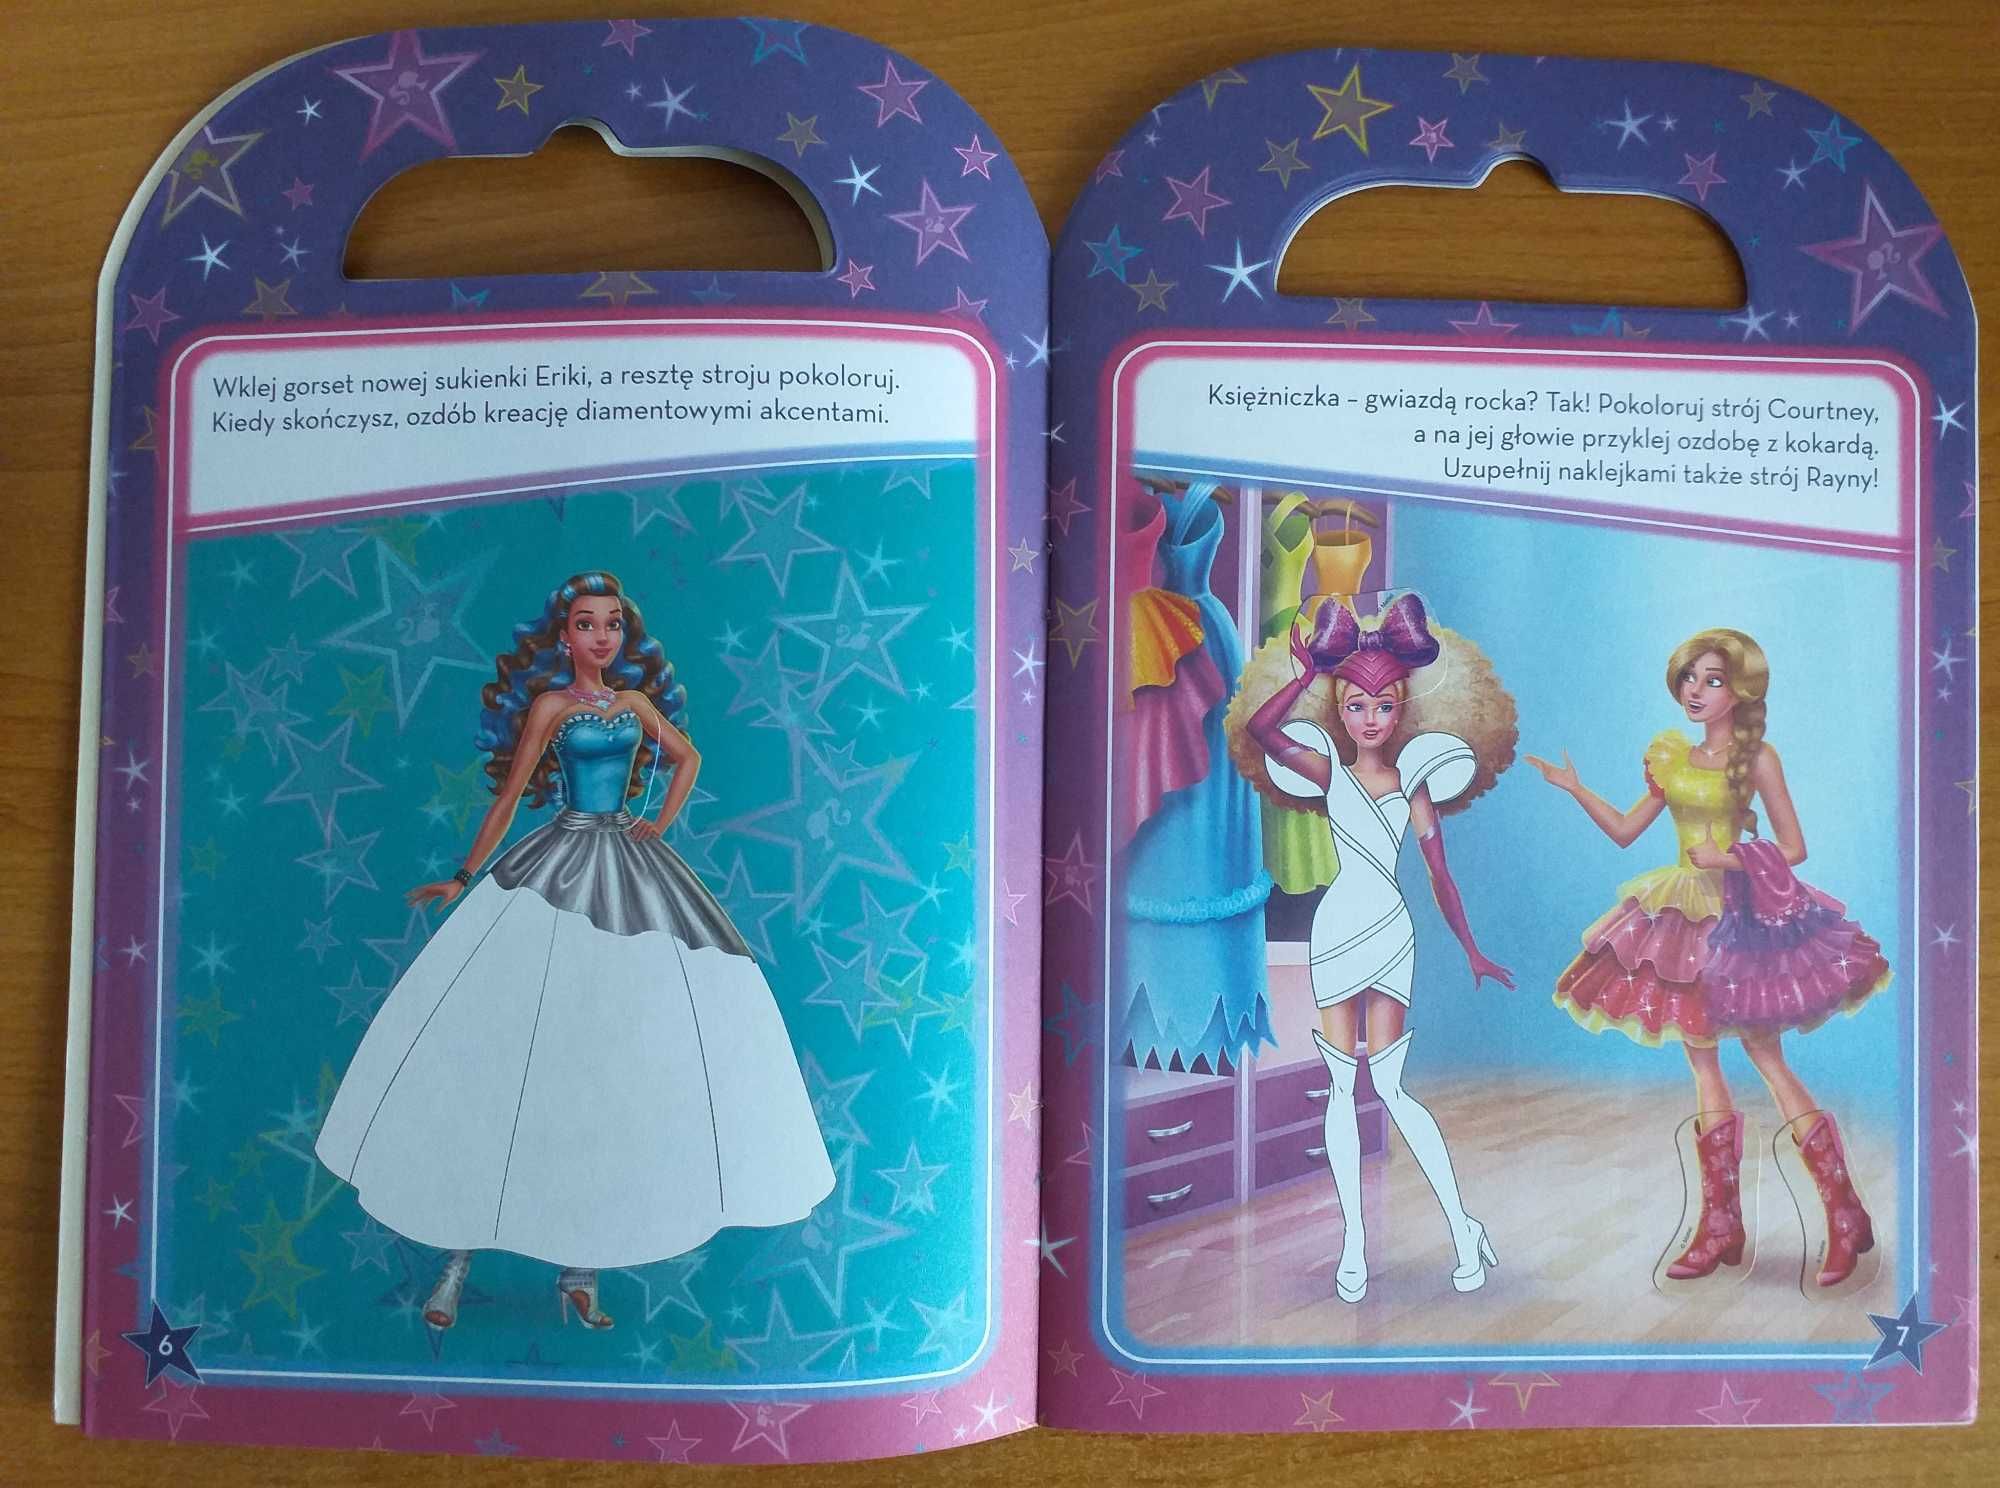 Barbie rockowa księżniczka: łamigłówki, naklejki - 3 zestawy